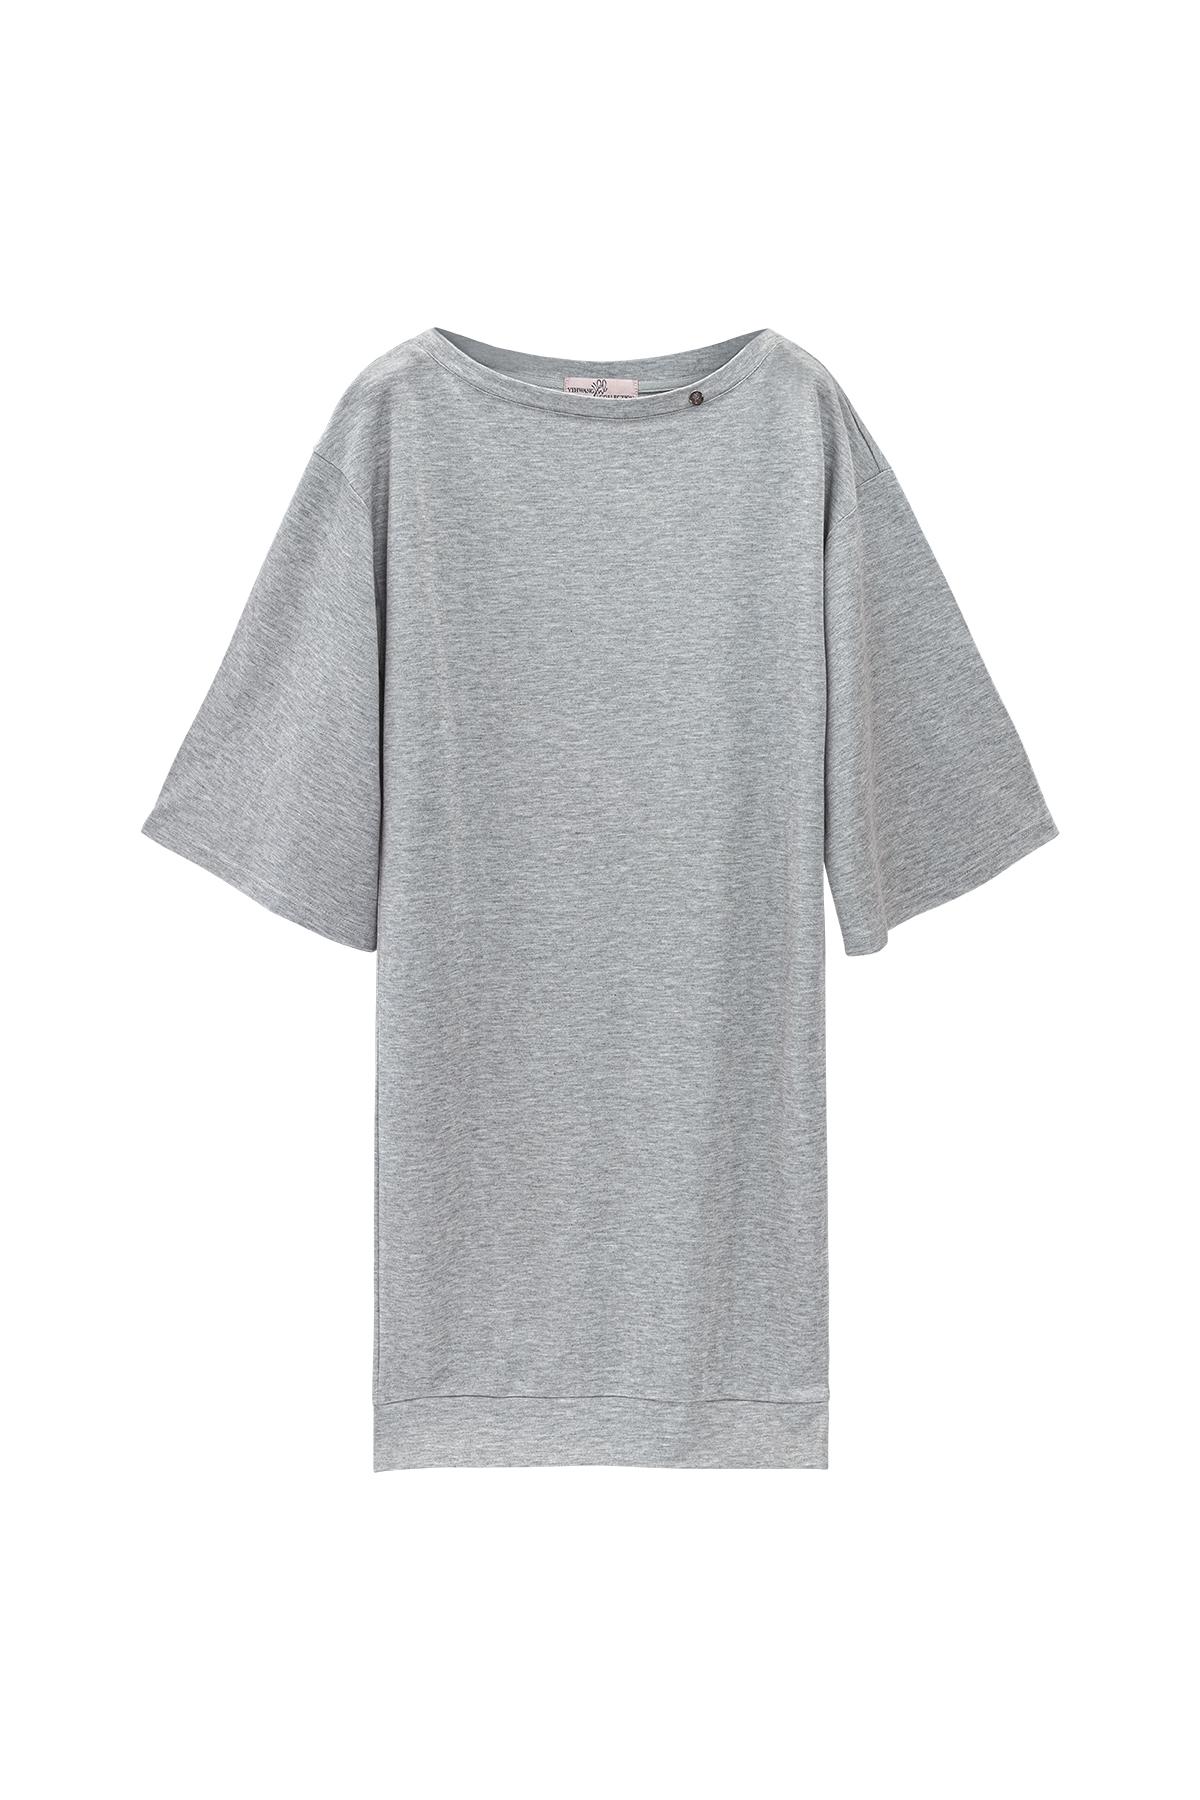 Parlak kaplamalı tişört elbise Grey S 